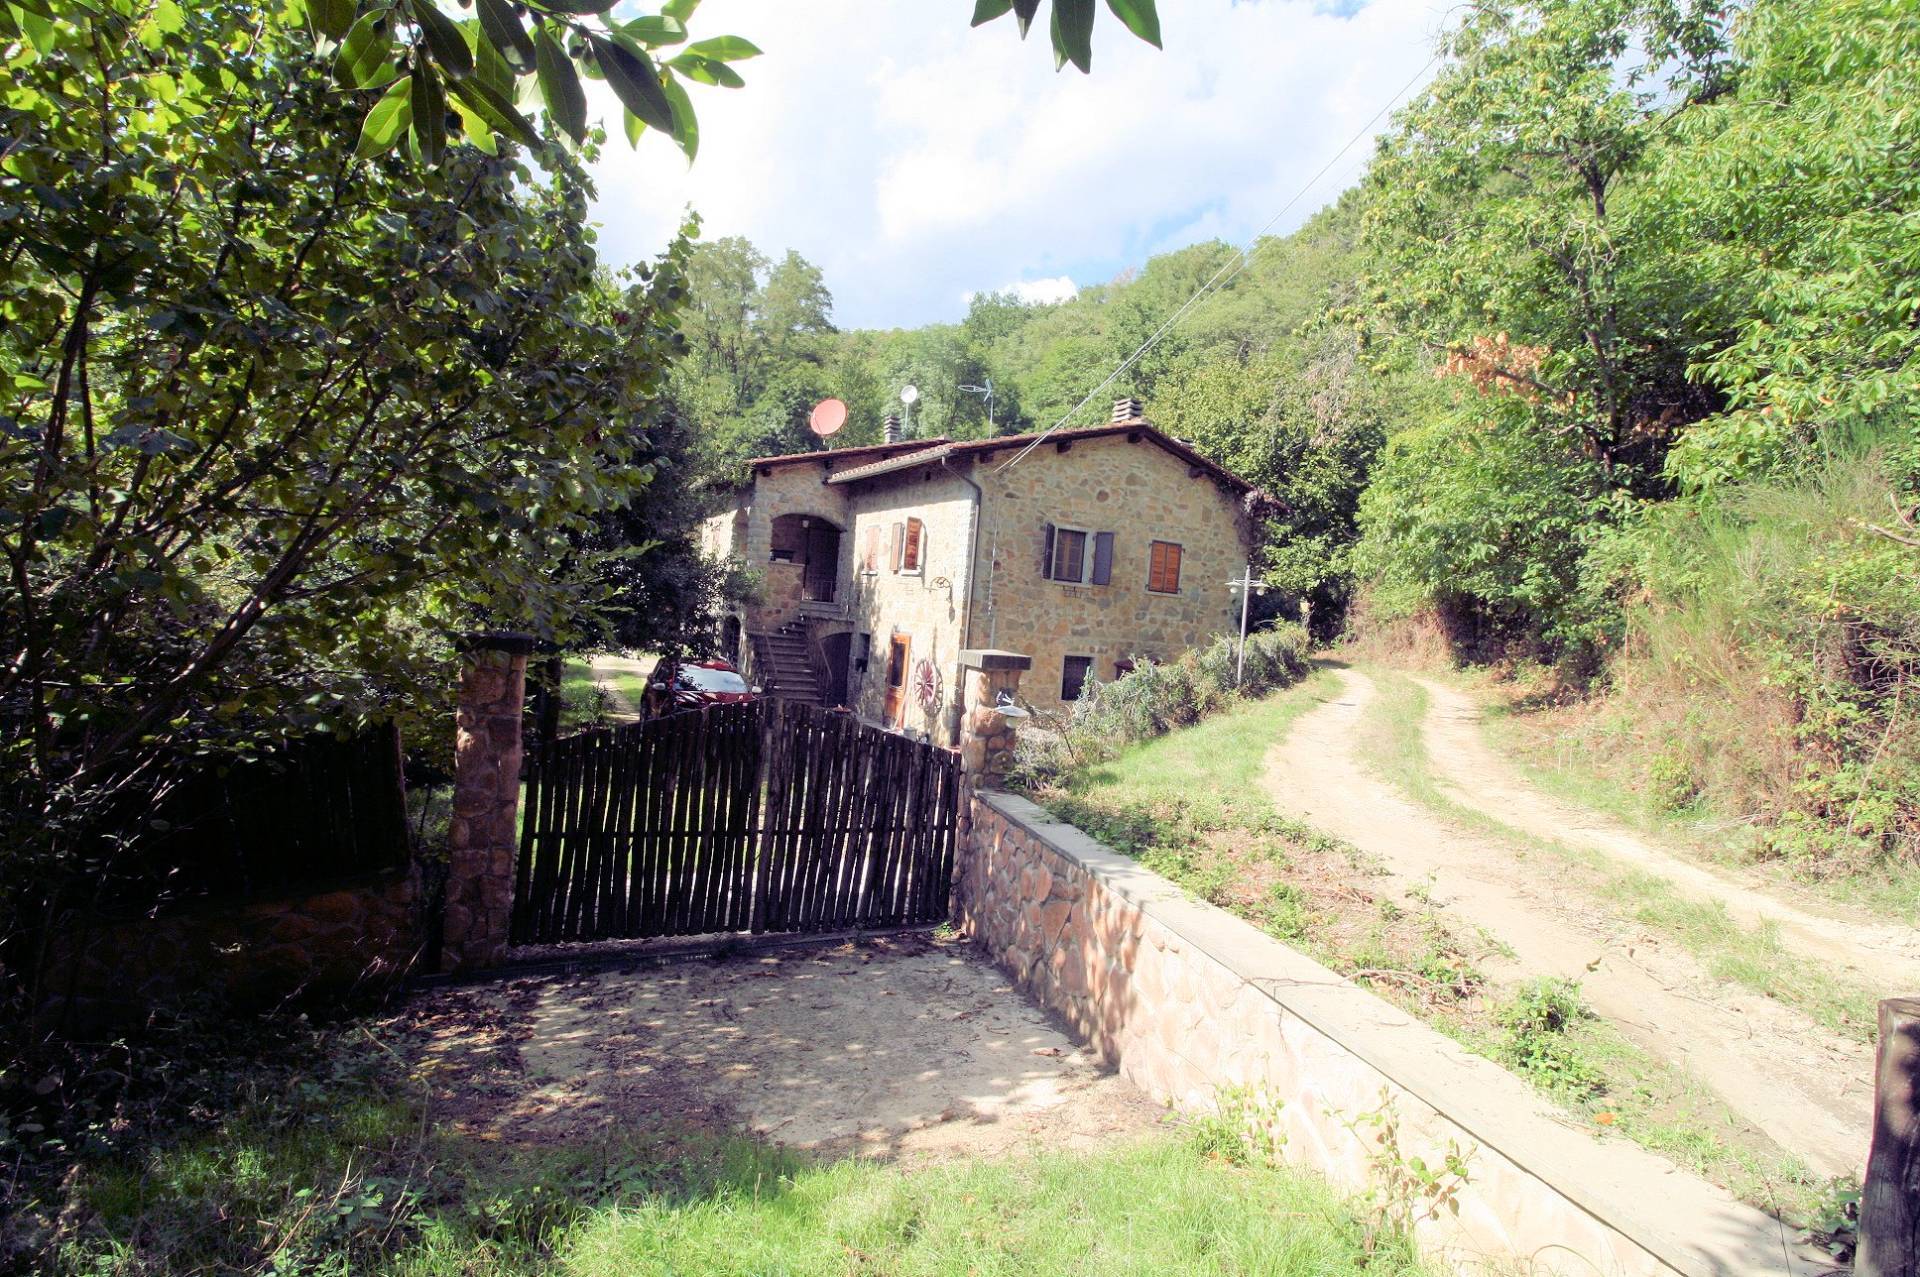 Rustico / Casale in vendita a Pistoia, 8 locali, prezzo € 350.000 | PortaleAgenzieImmobiliari.it